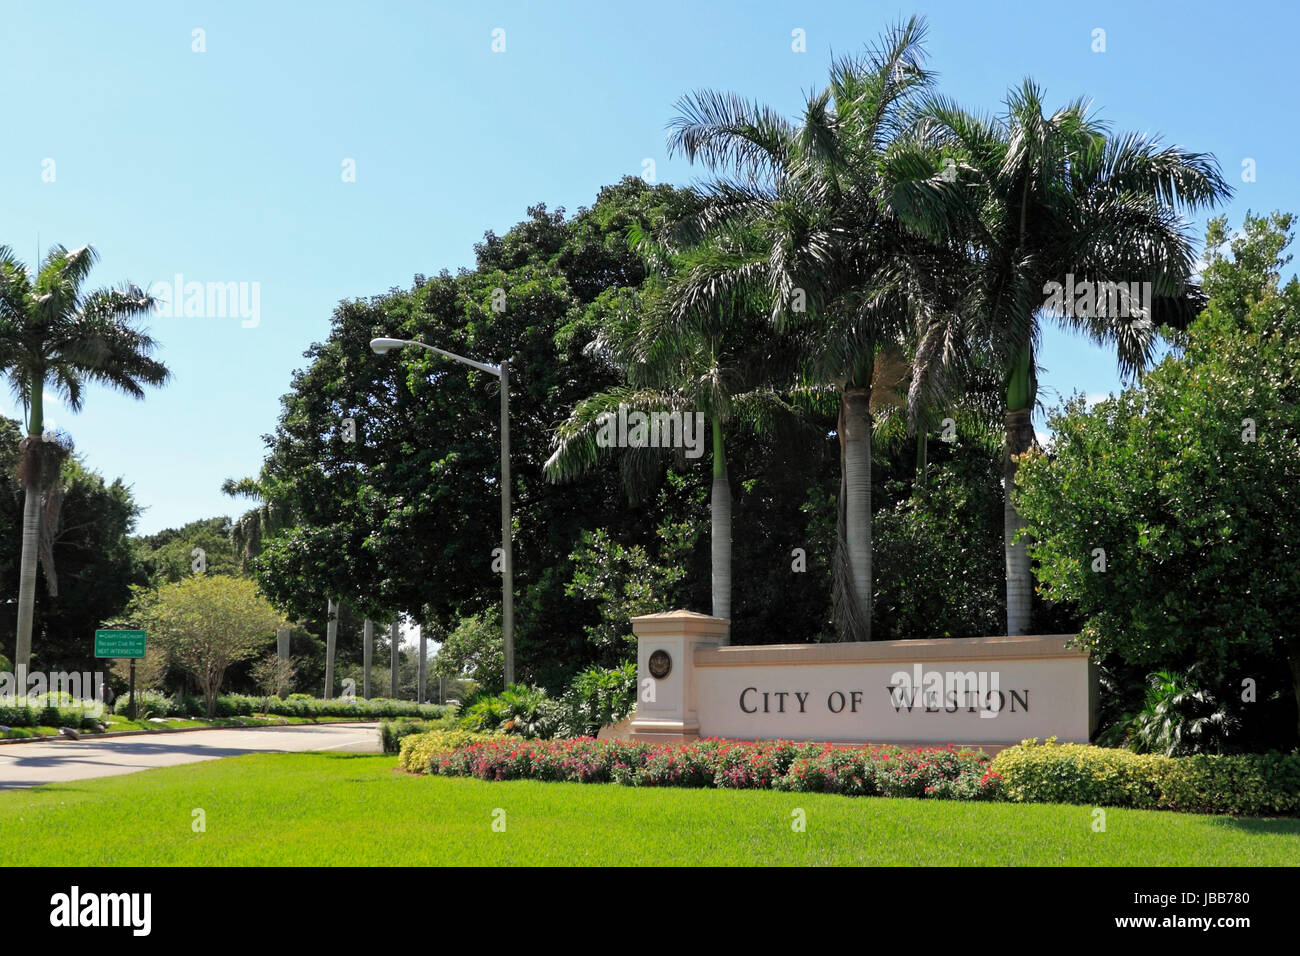 WESTON, Floride - 22 octobre 2013 : beaux aménagements paysagers et de fleurs entourent un grand panneau d'entrée de la ville de Weston, situé dans l'ouest du comté de Broward, population 67 641 en 2012 sur une journée ensoleillée. Banque D'Images